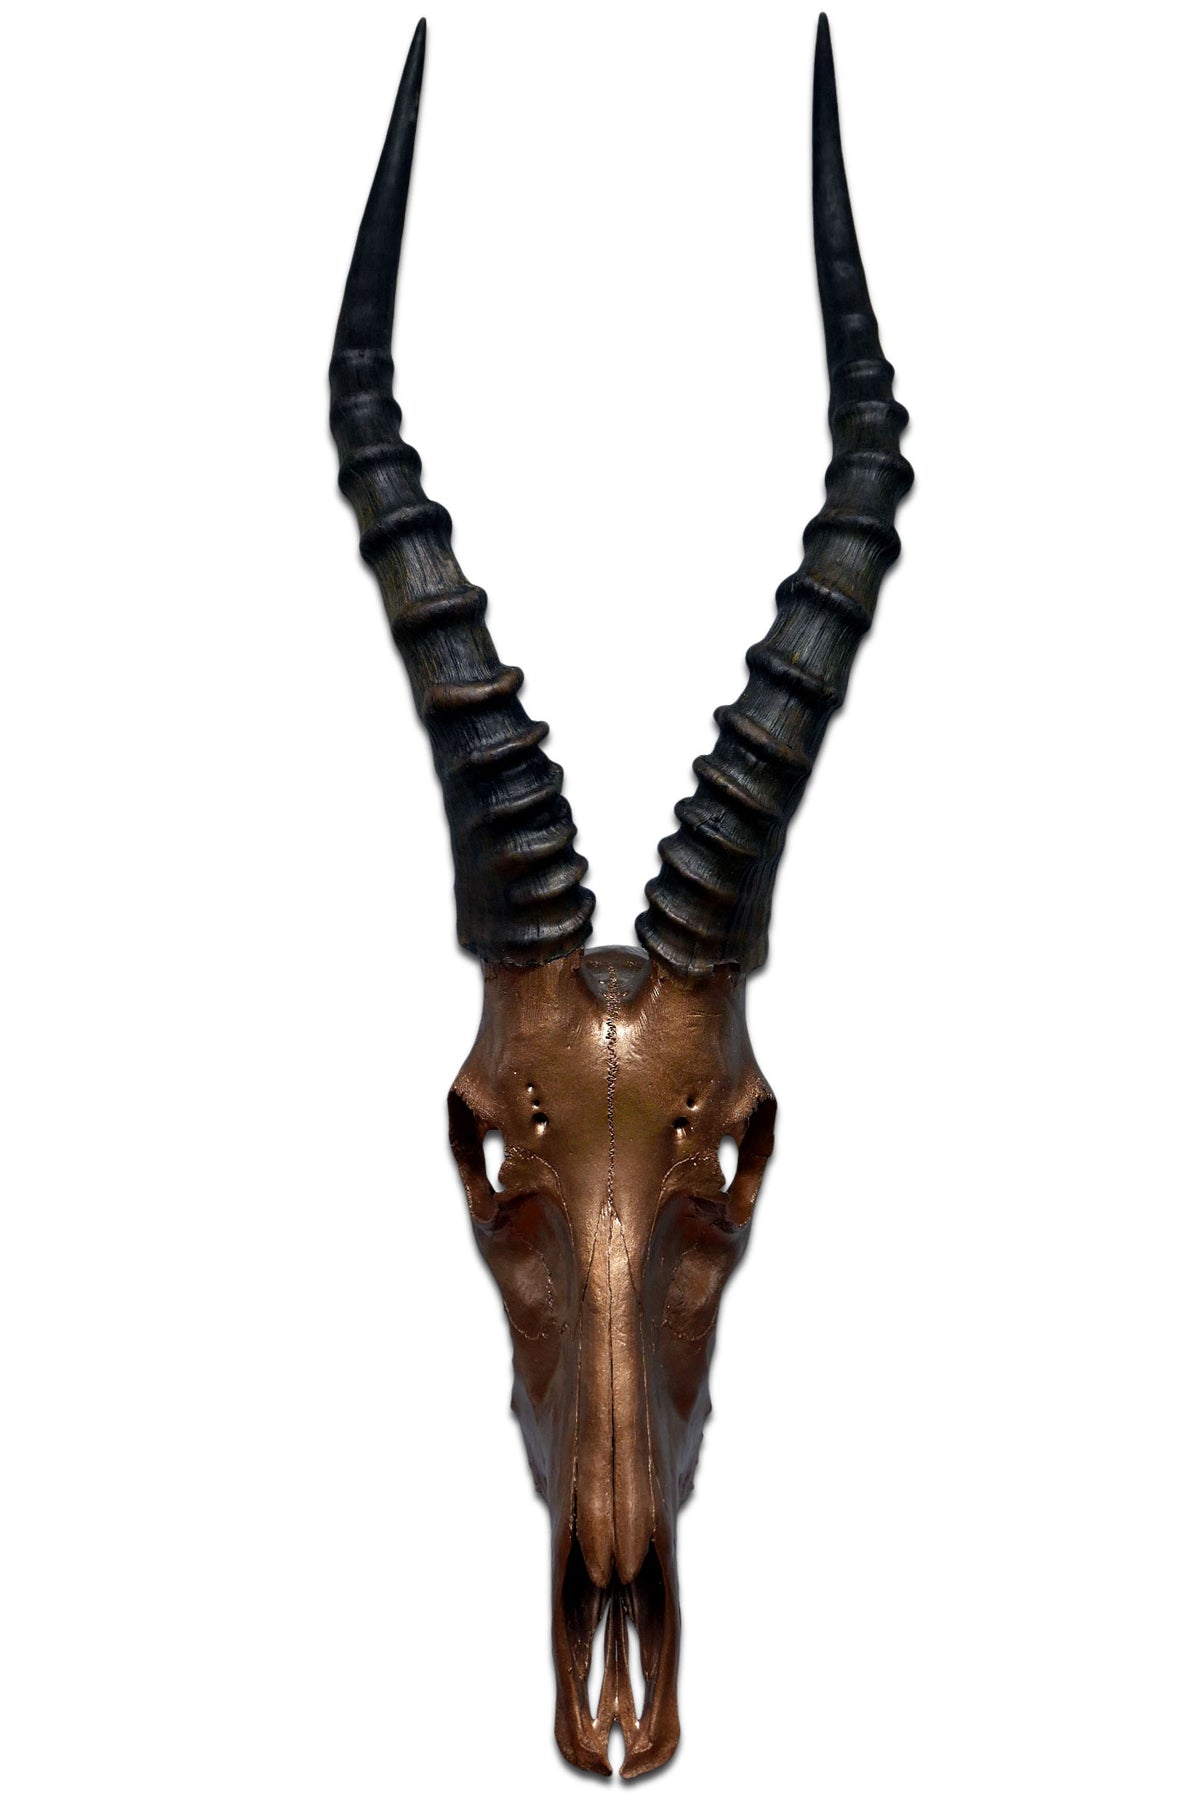 Real Blesbok Skull Bronze Spray Painted African Antelope Horns/Antelope Skull